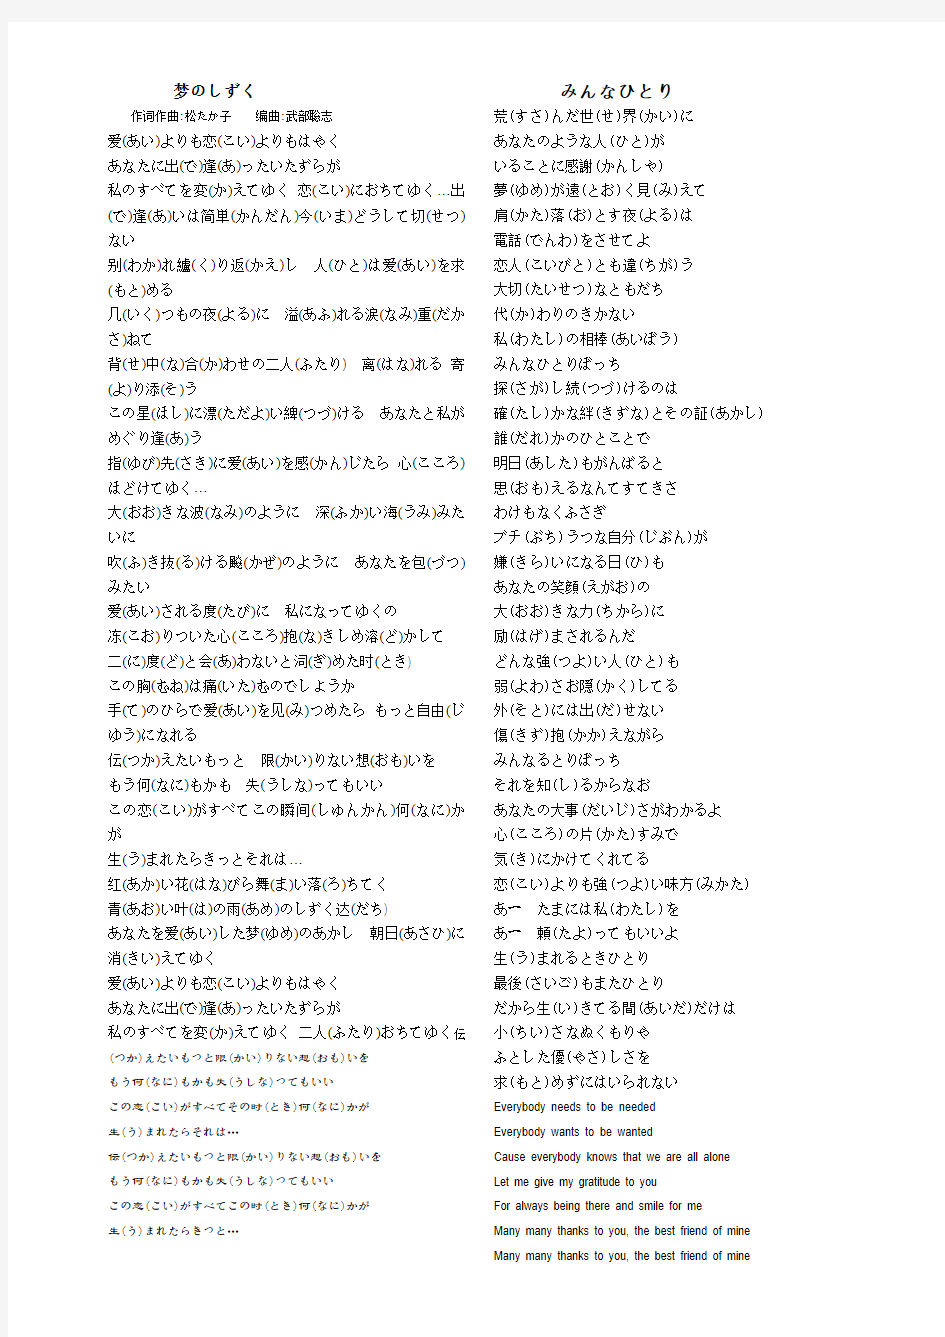 几首日语歌歌词(适合日语初学者)